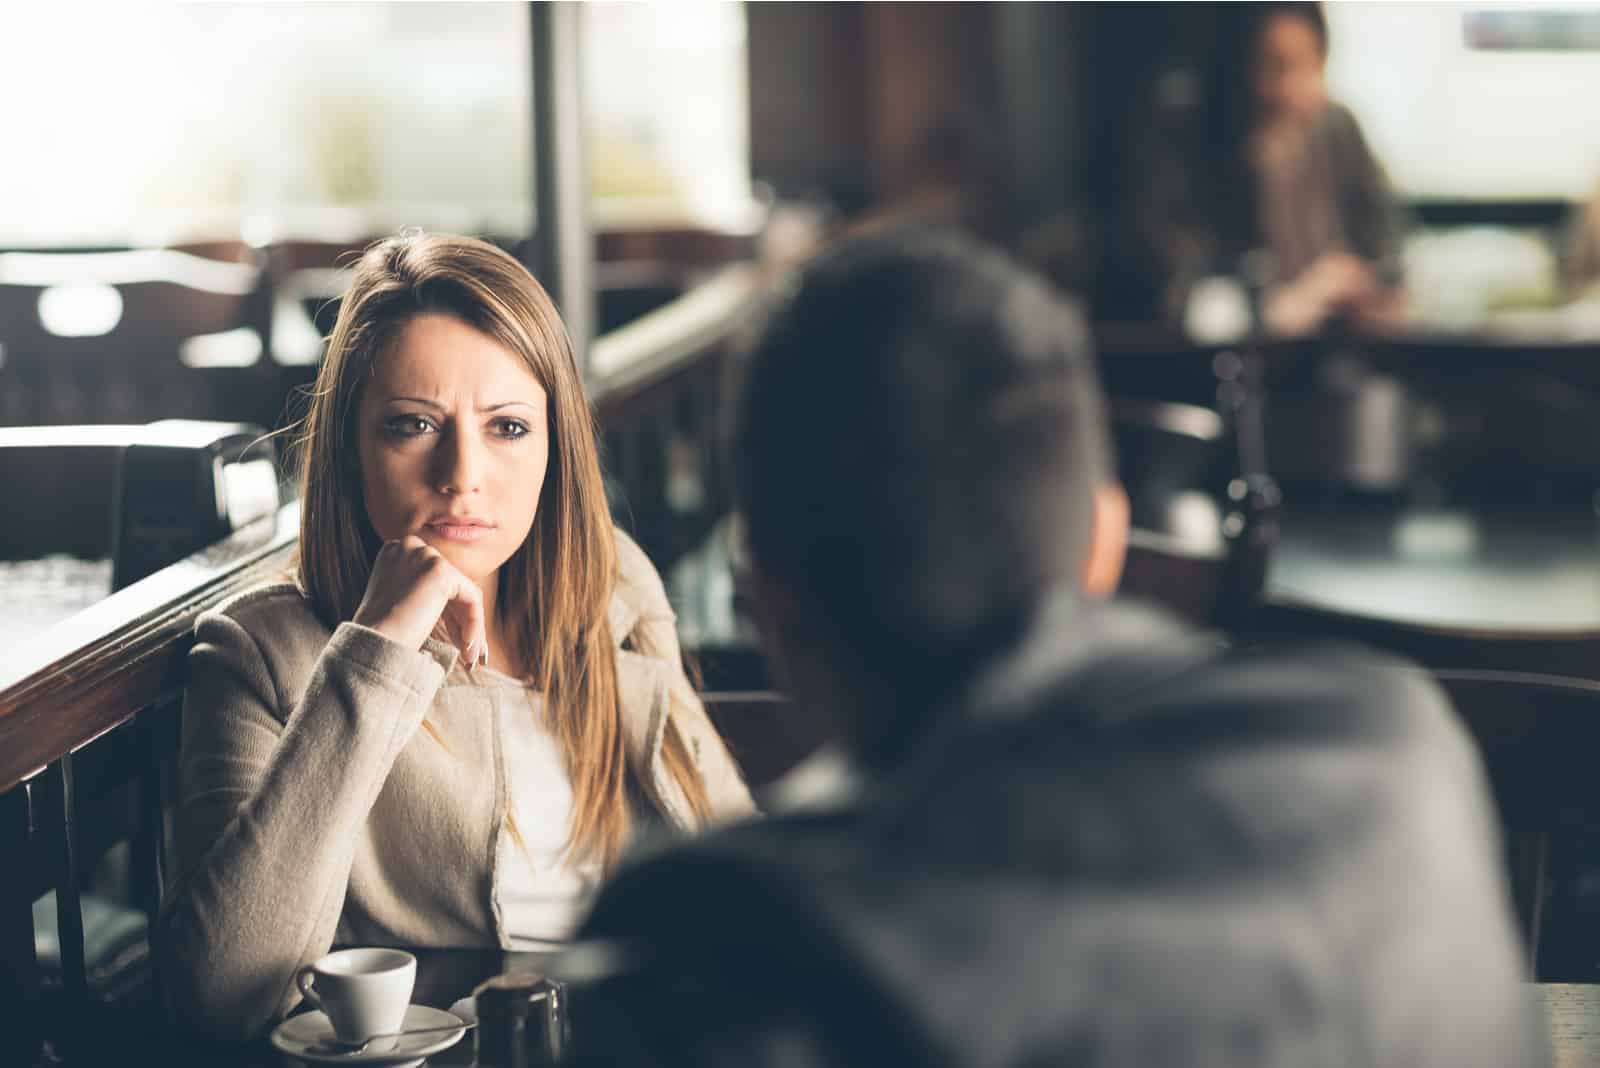 la femme regarde l'homme pendant qu'ils parlent et boivent du café